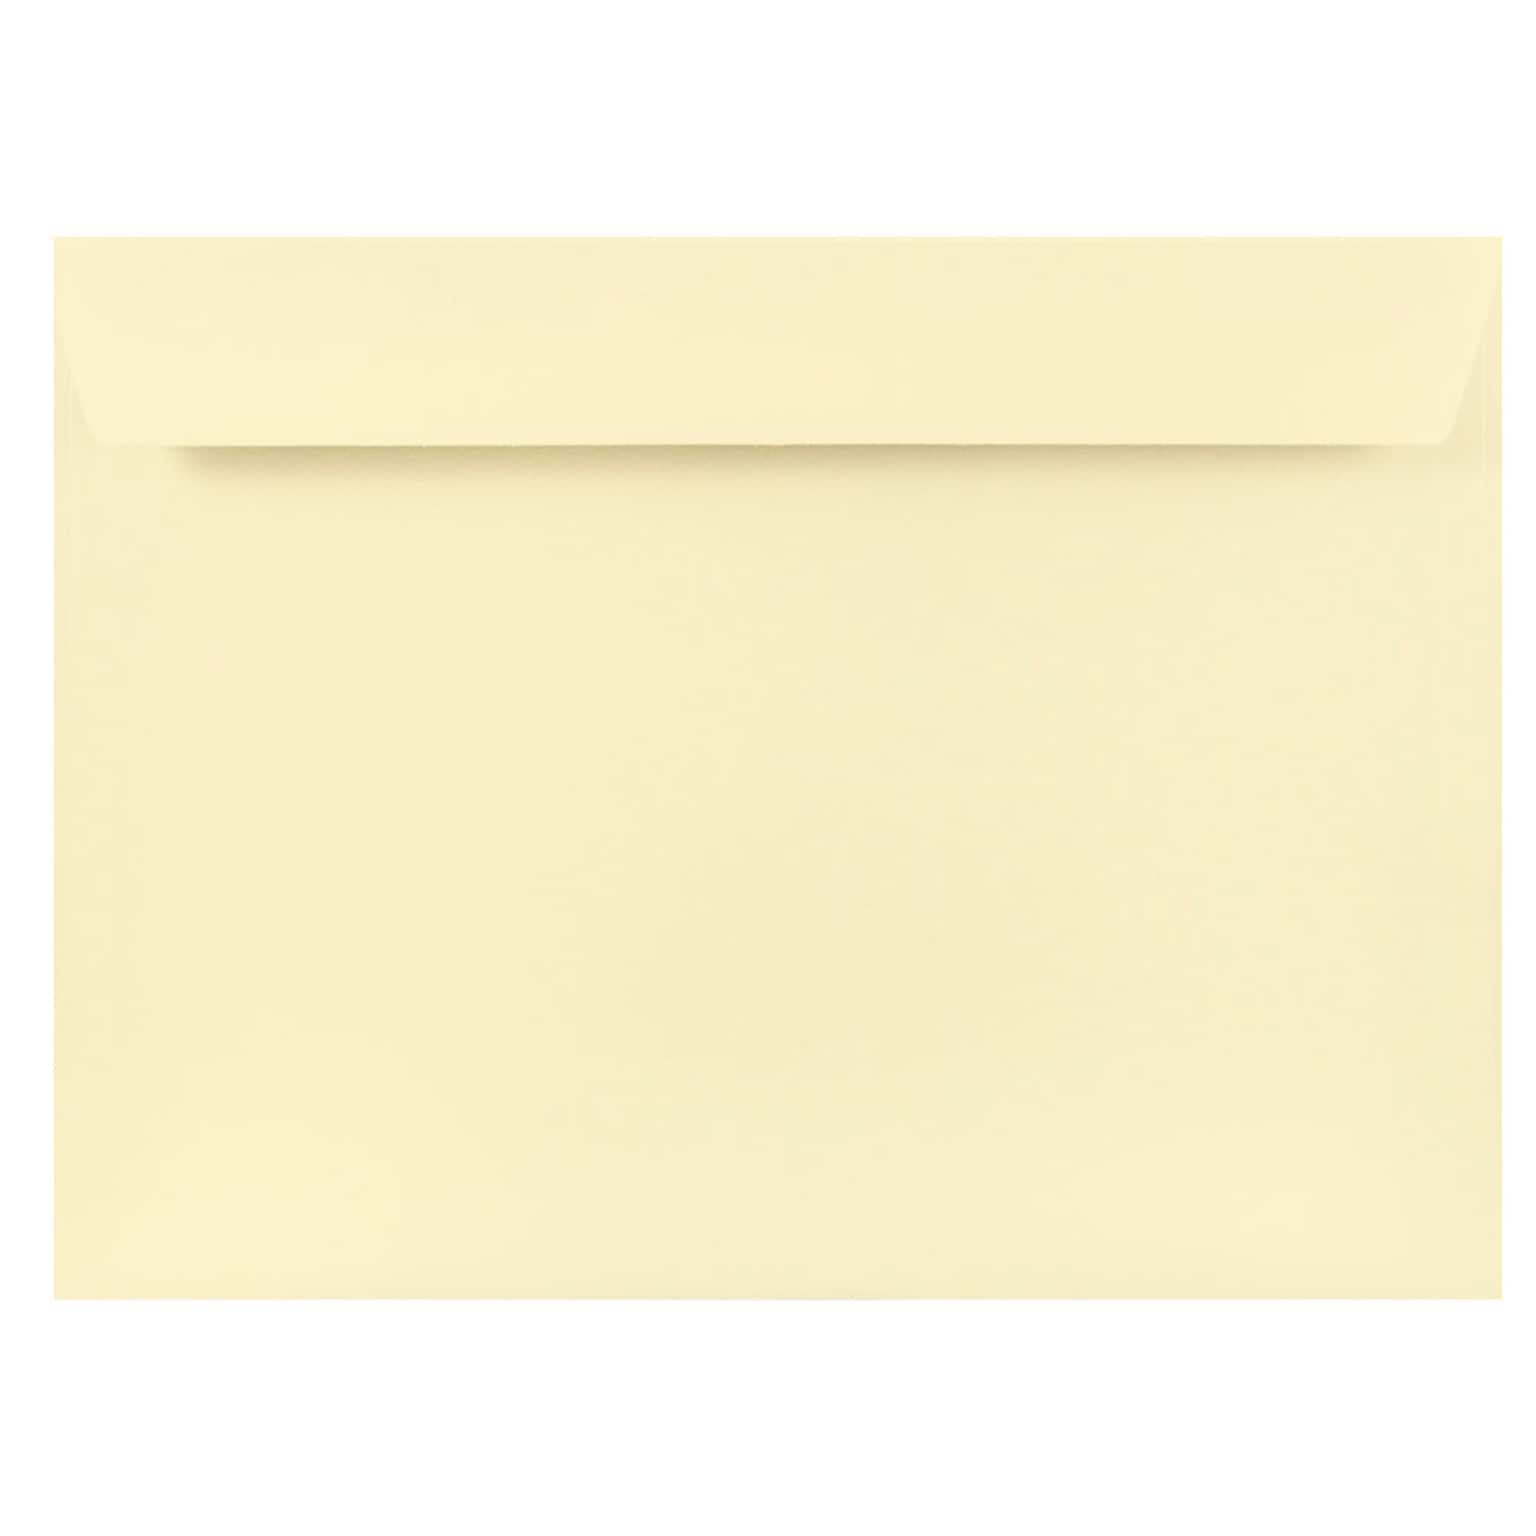 JAM Paper 9 x 12 Booklet Strathmore Envelopes, Natural White Wove, 25/Pack (191286)